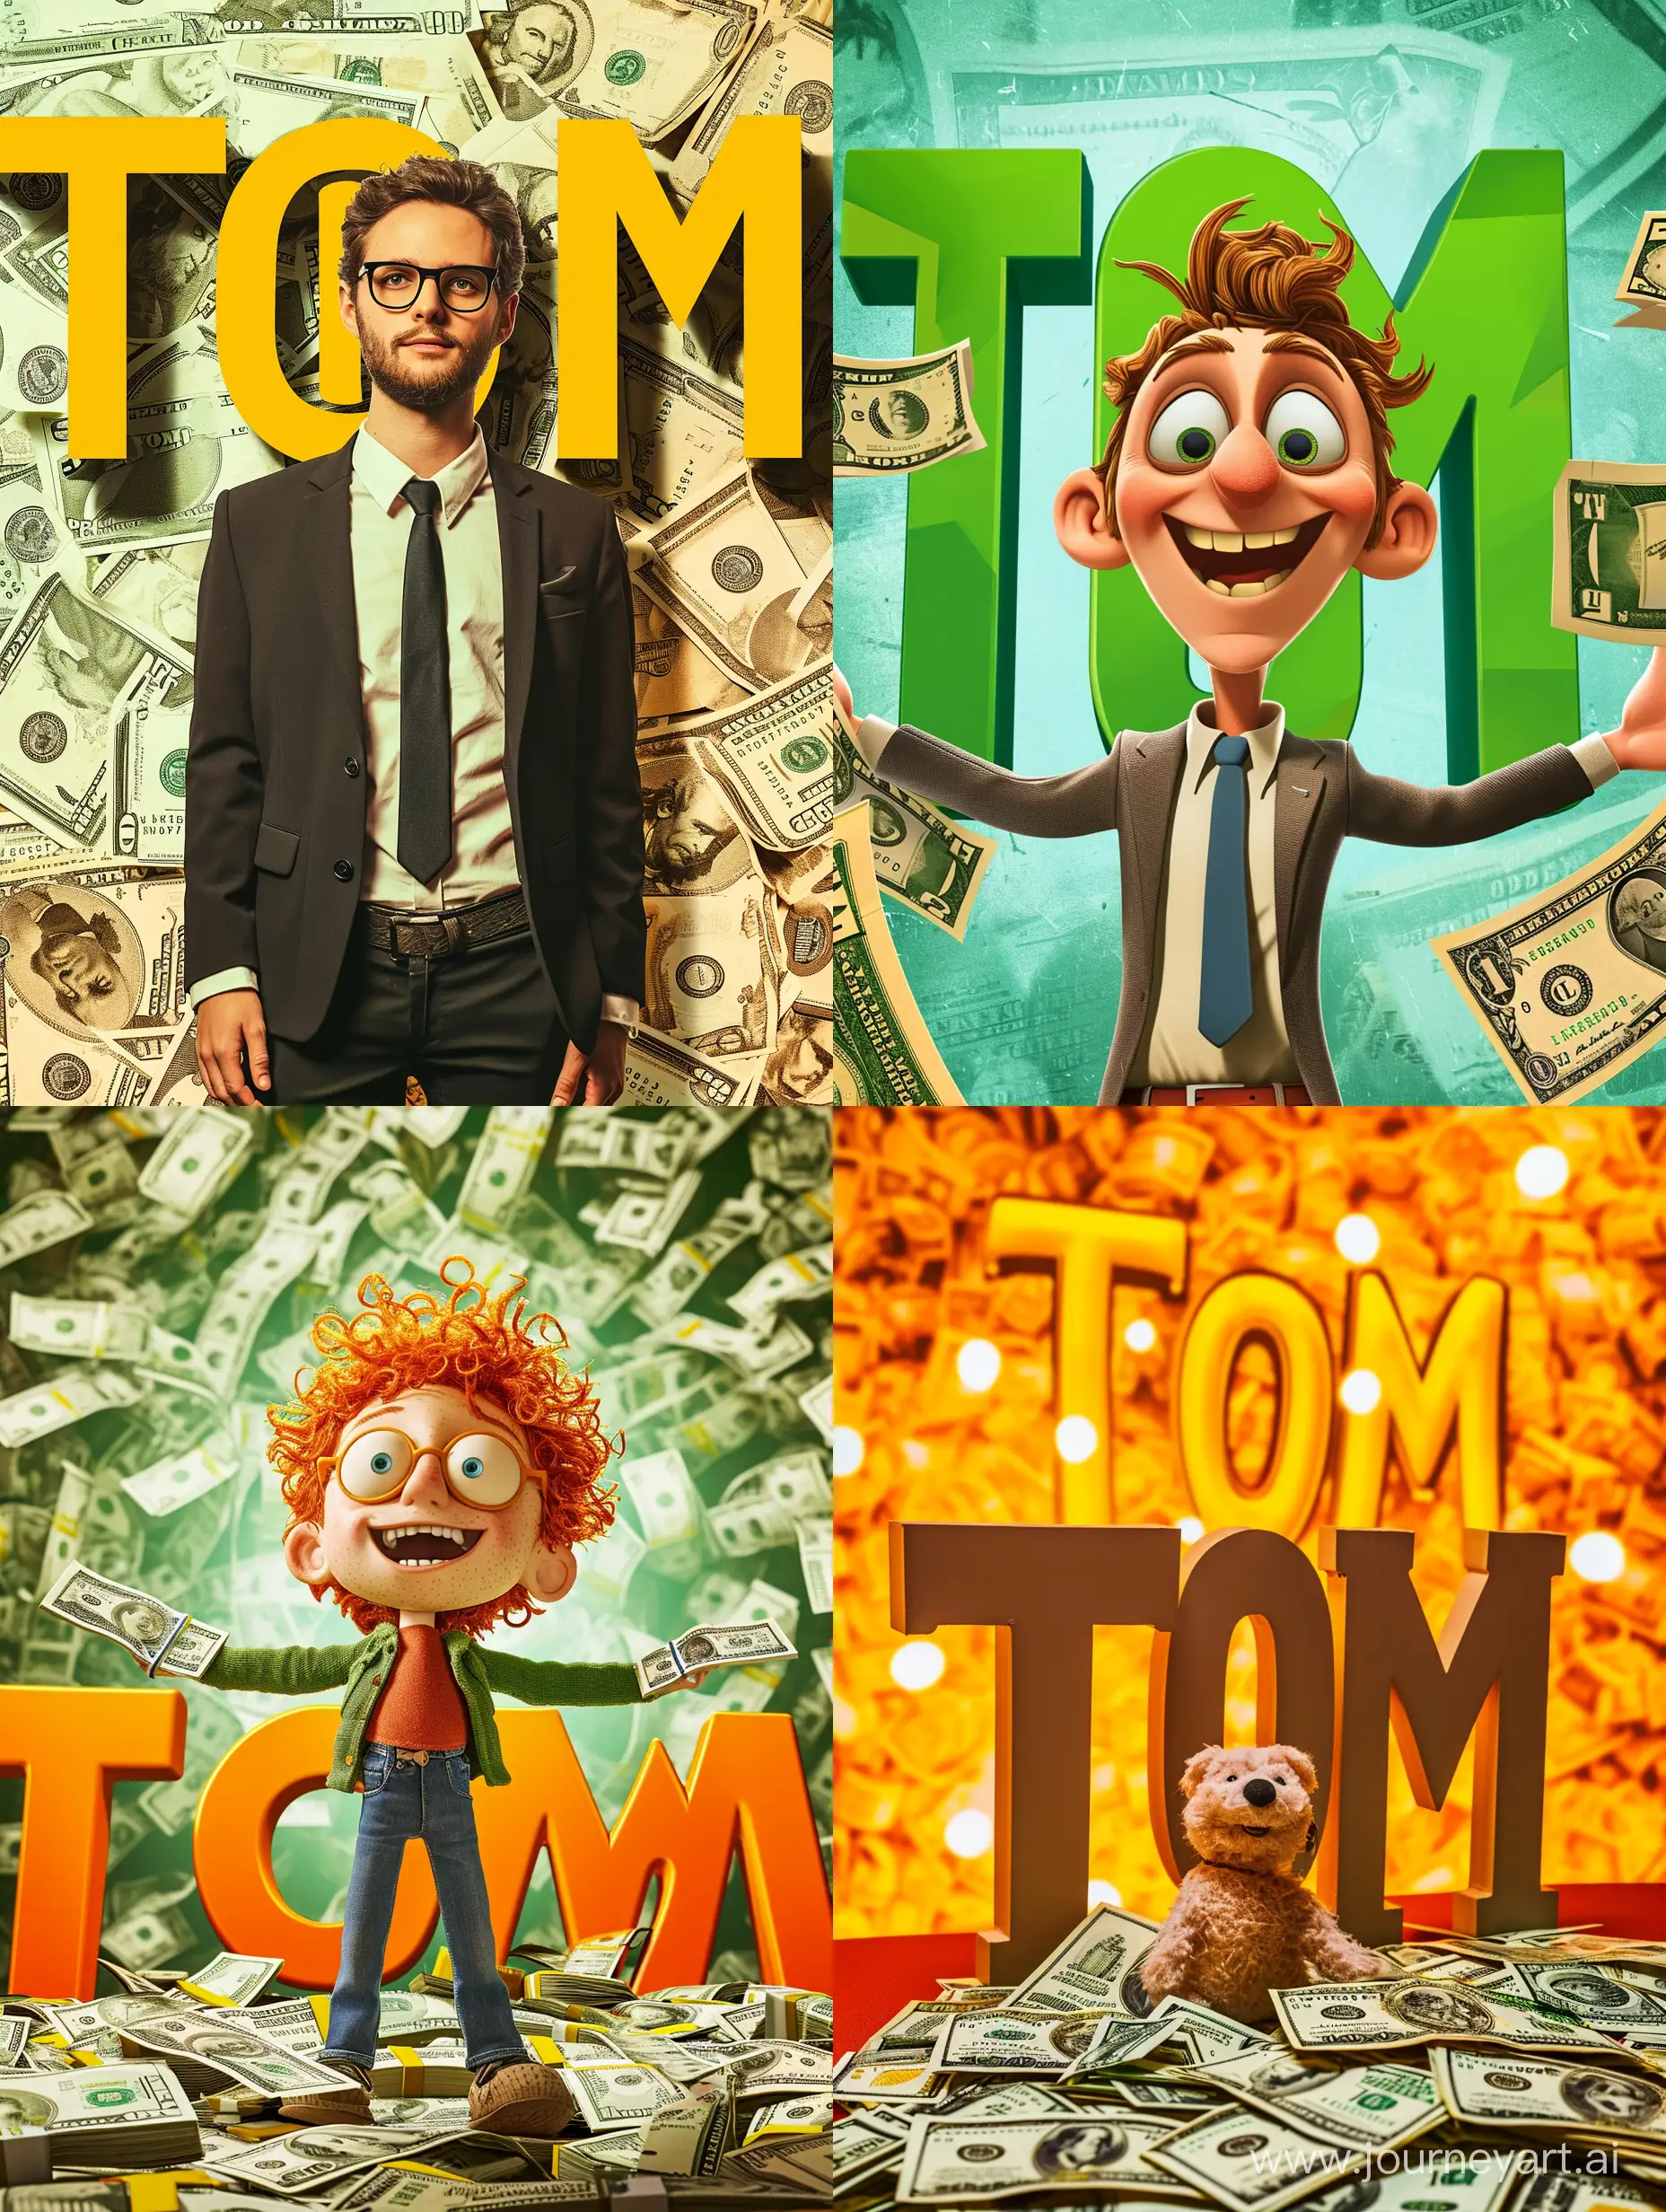 яркая картинка с персонажем, много денег, фон большие буквы "Tom"